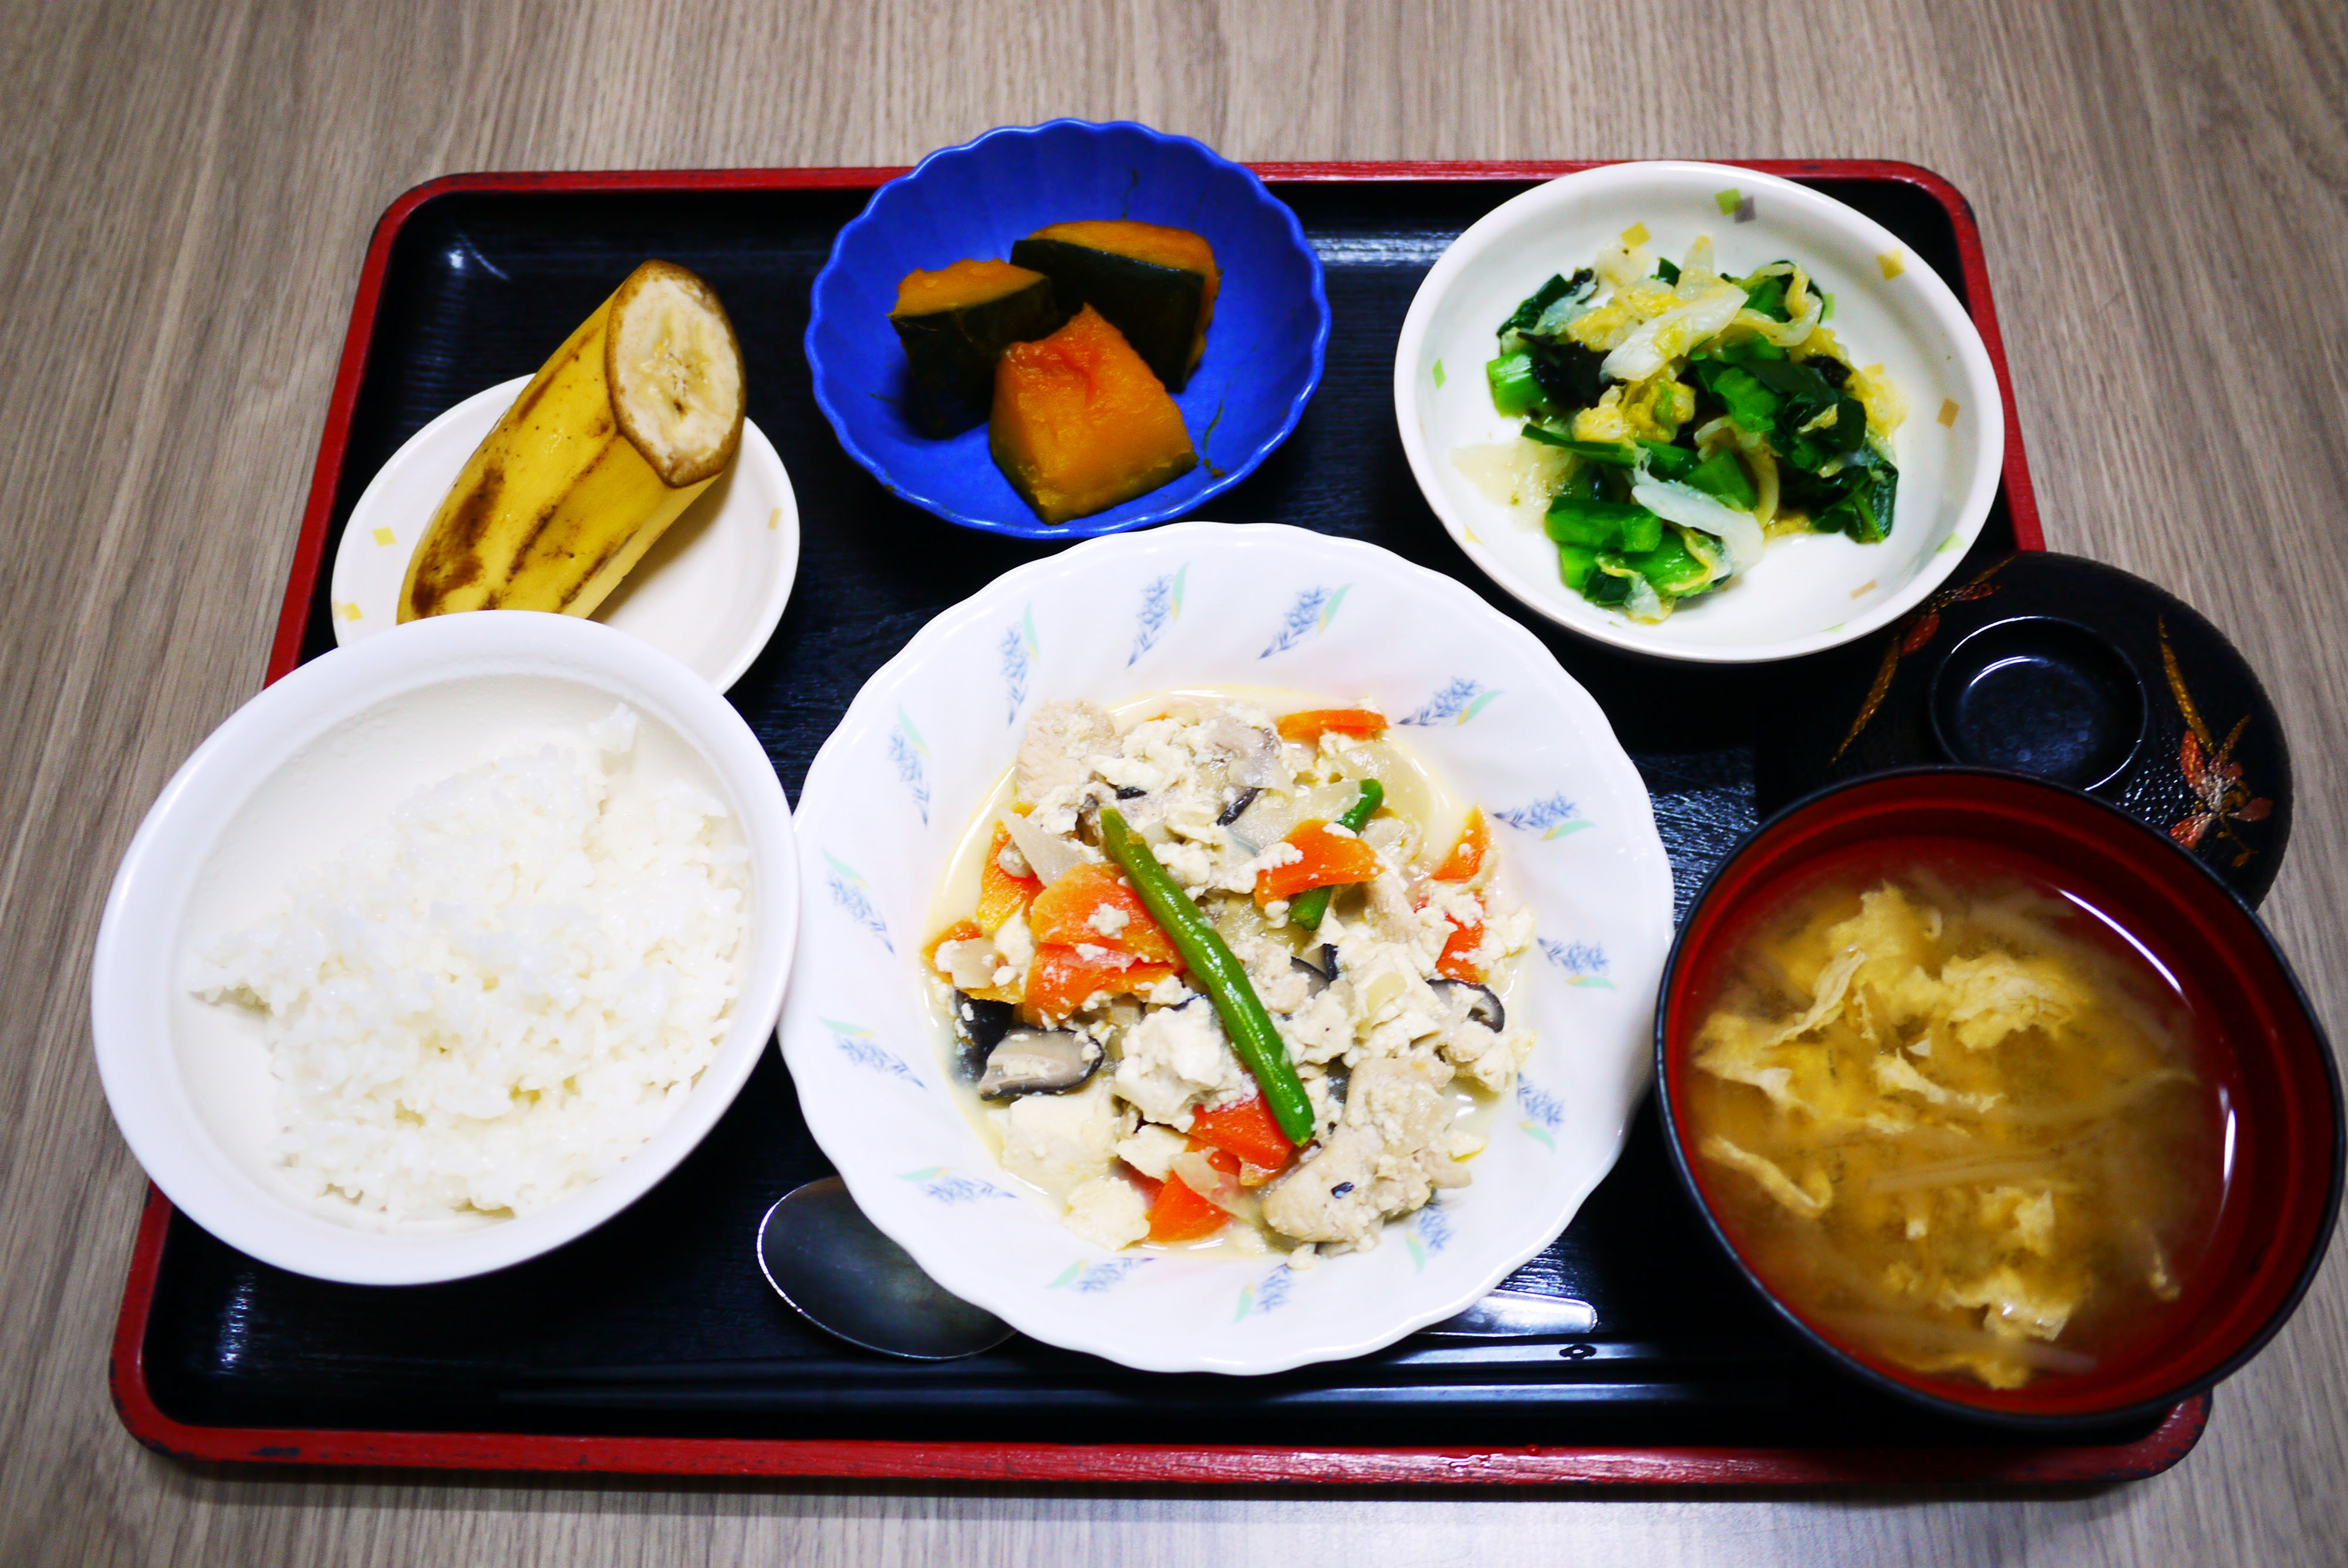 きょうのお昼ごはんは、炒り豆腐、焼きのり和え、かぼちゃ煮、みそ汁、果物でした。